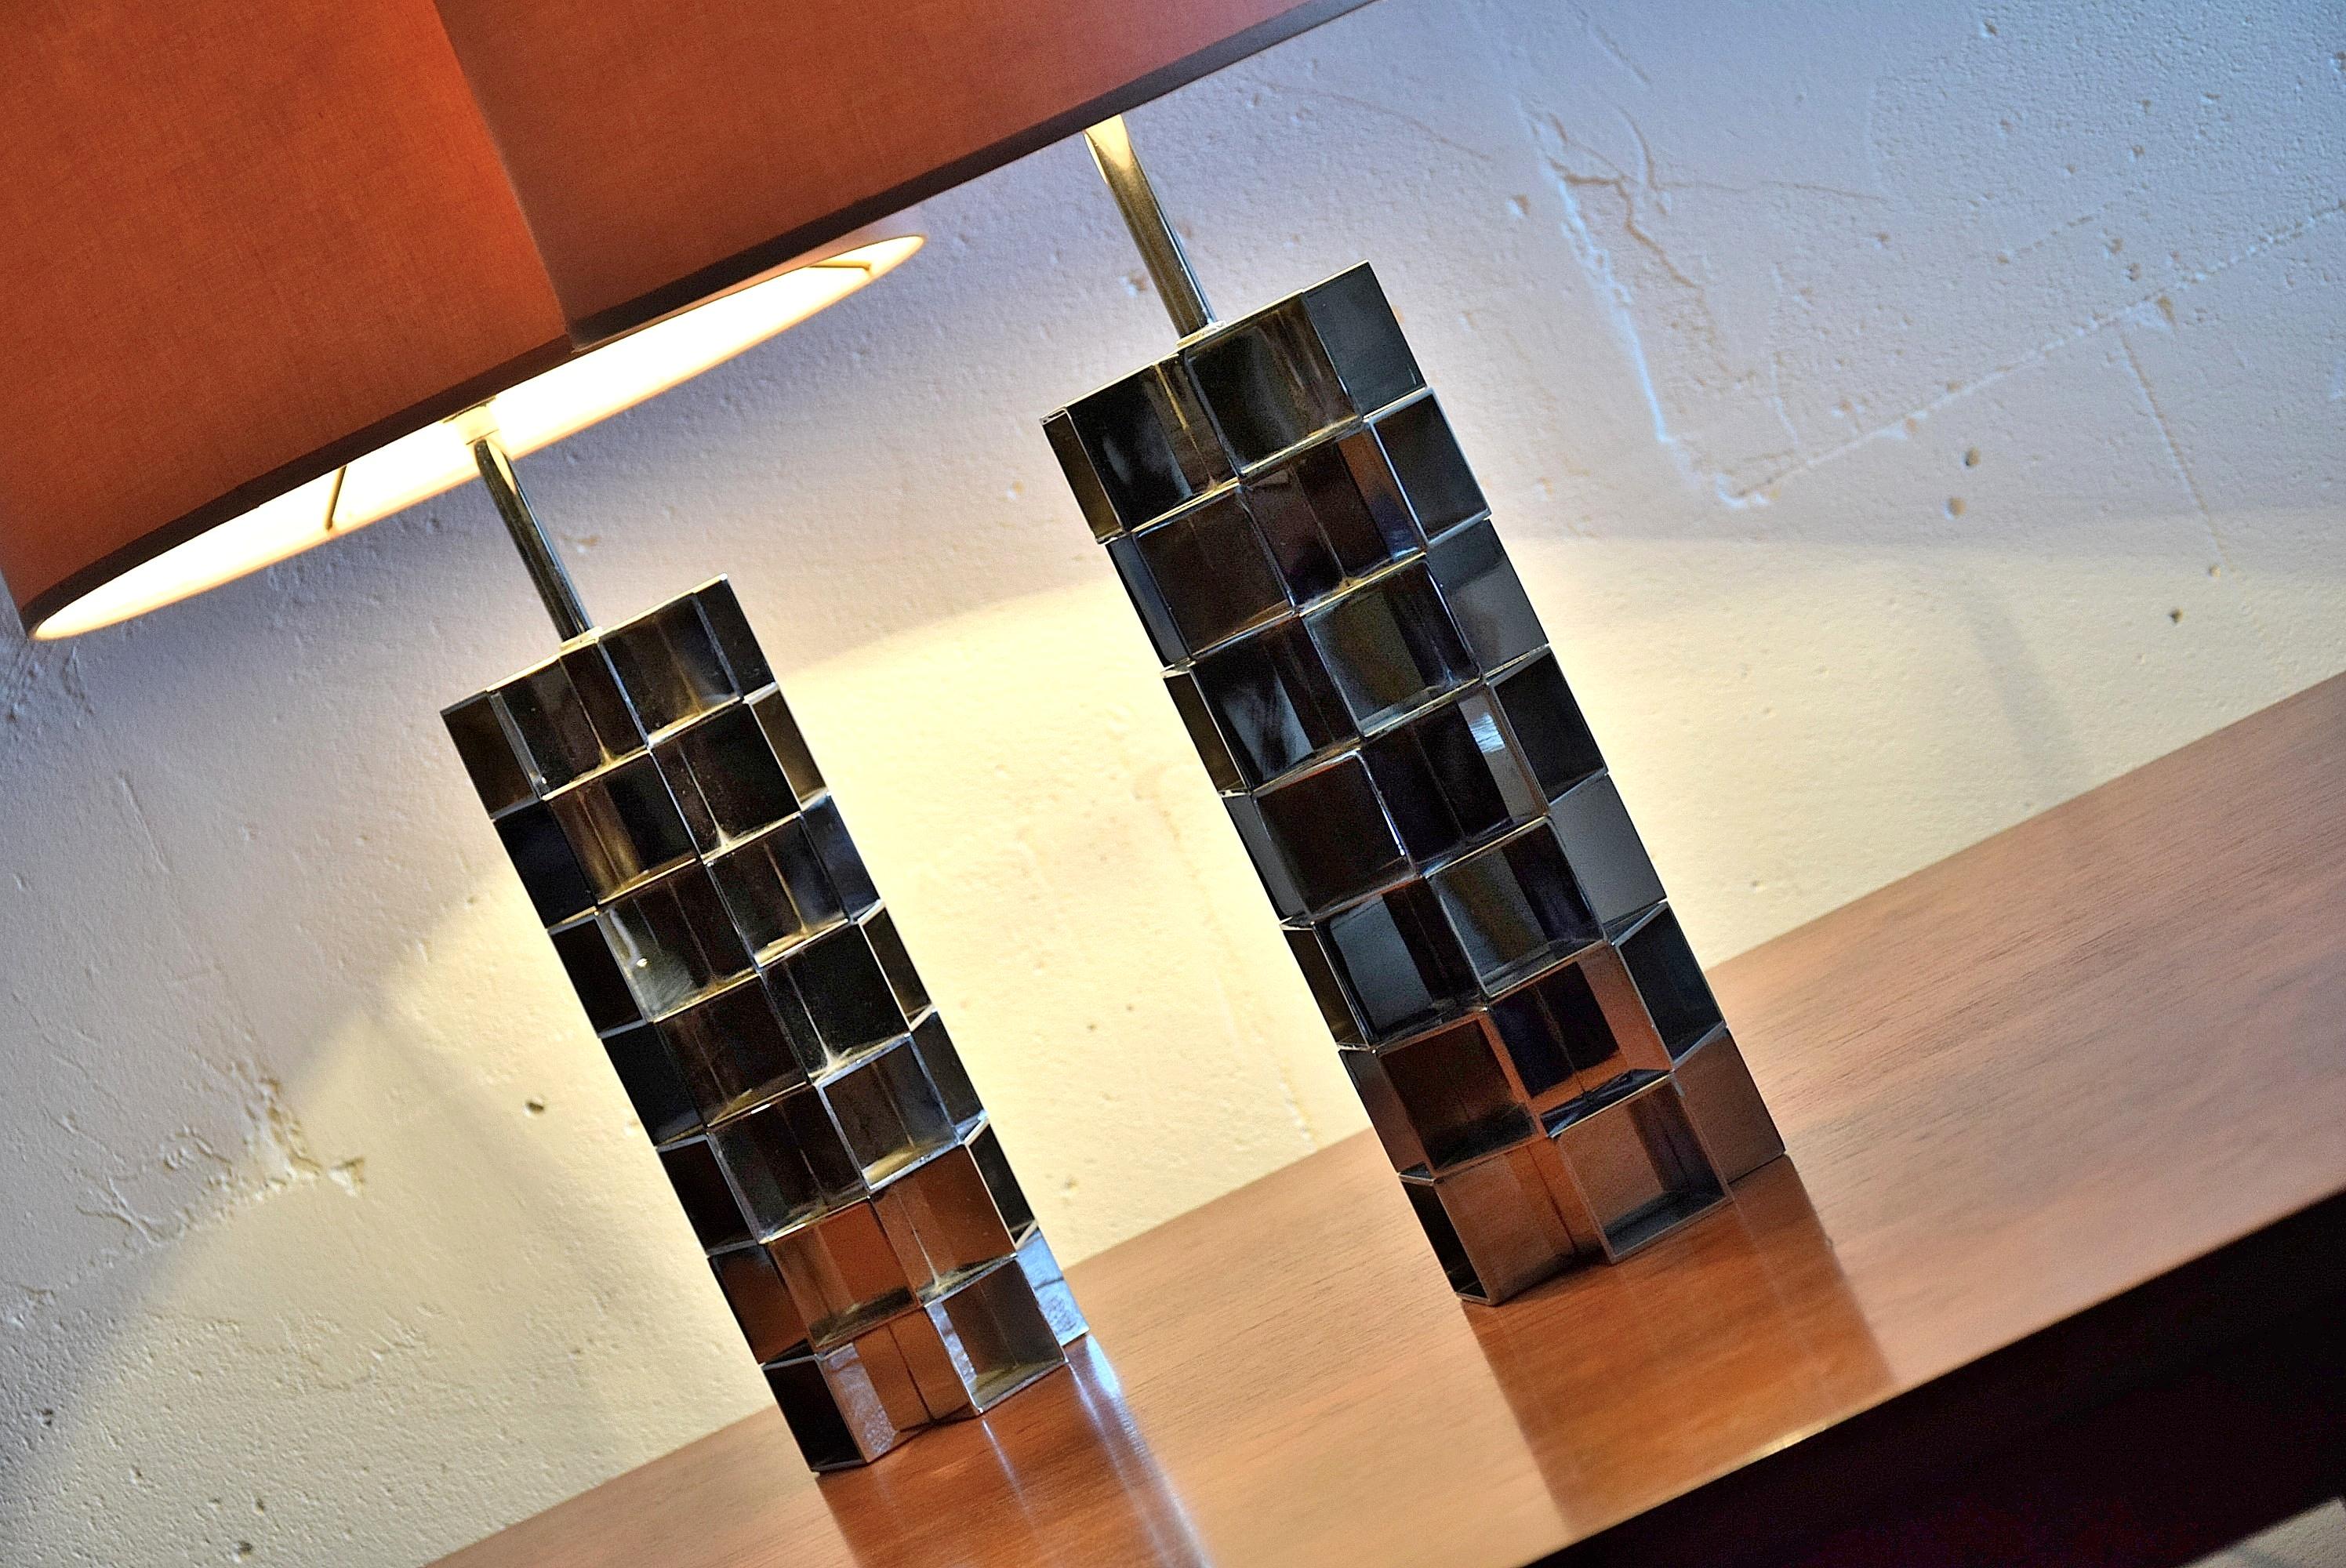 Hollywood Regency Pierre Cardin Stil Paar 1970er Jahre stilvolle Chrom Tischlampen. Der Sockel/Chrom beider Lampen ist in ausgezeichnetem Zustand. Die Schirme haben einige kleine Flecken. Die Maße der Schirme sind H 32,5 x T 31,5 cm. Die Maße der